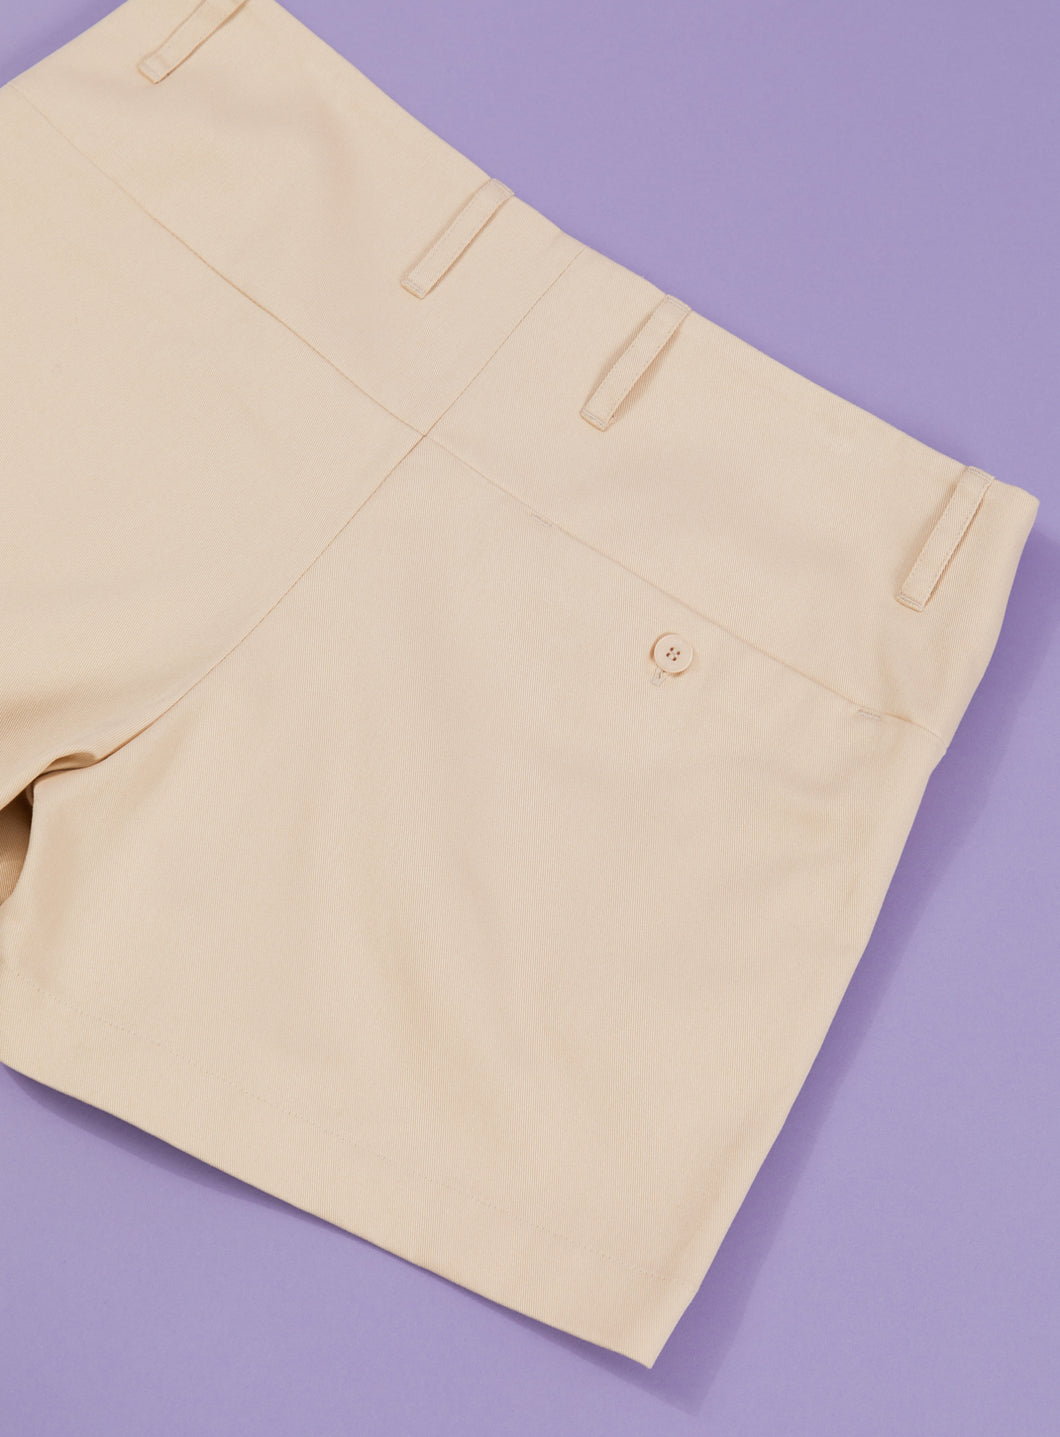 Shorts with Large Waist Belt in Ecru Cotton Gabardine